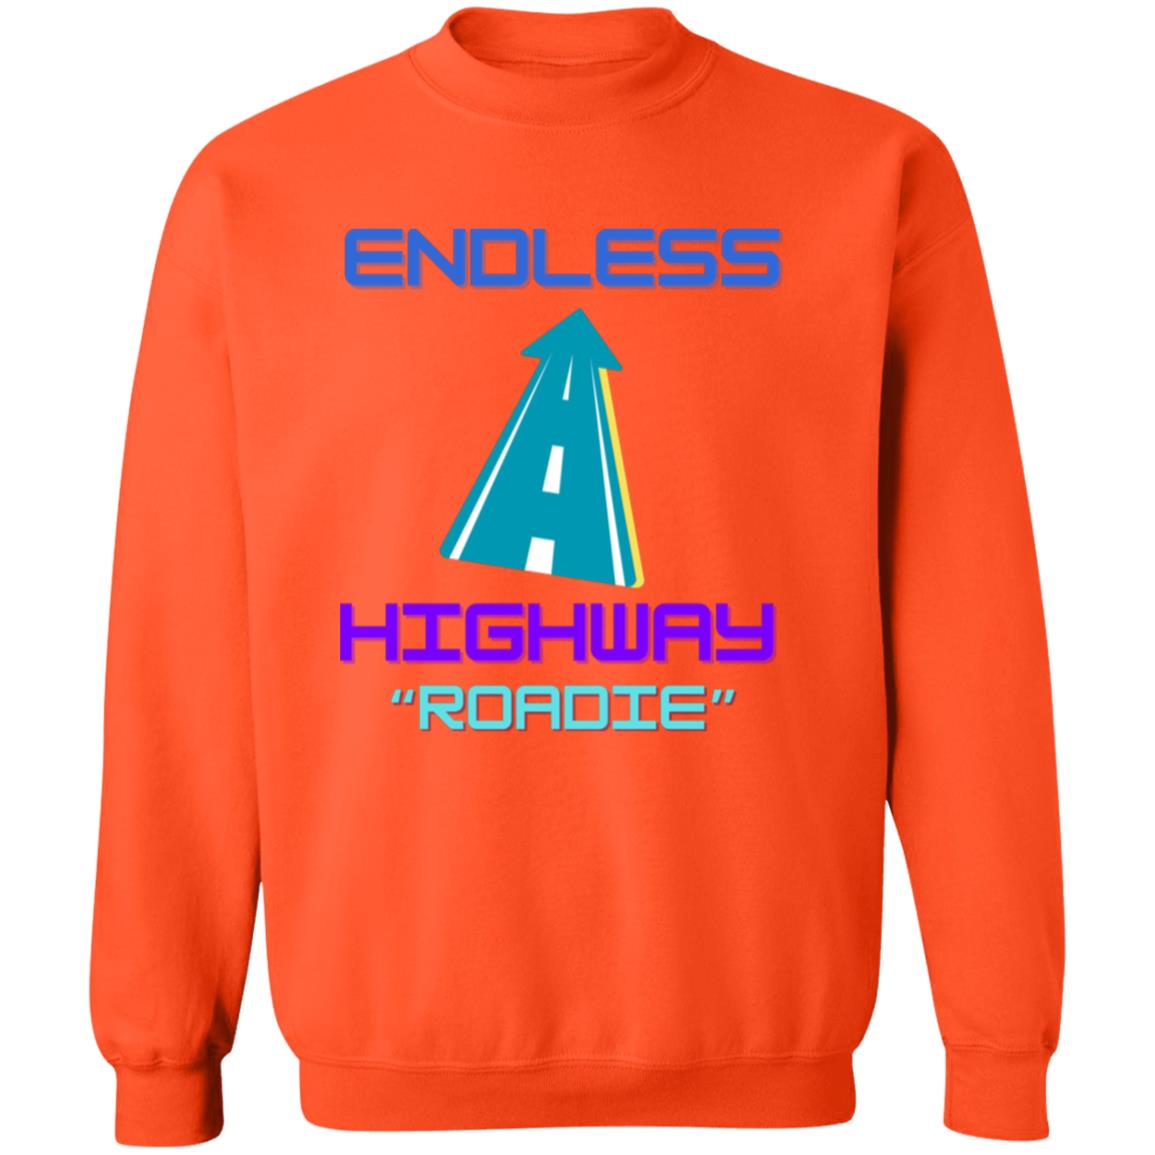 Endless Highway "Roadie" Crewneck Pullover Sweatshirt